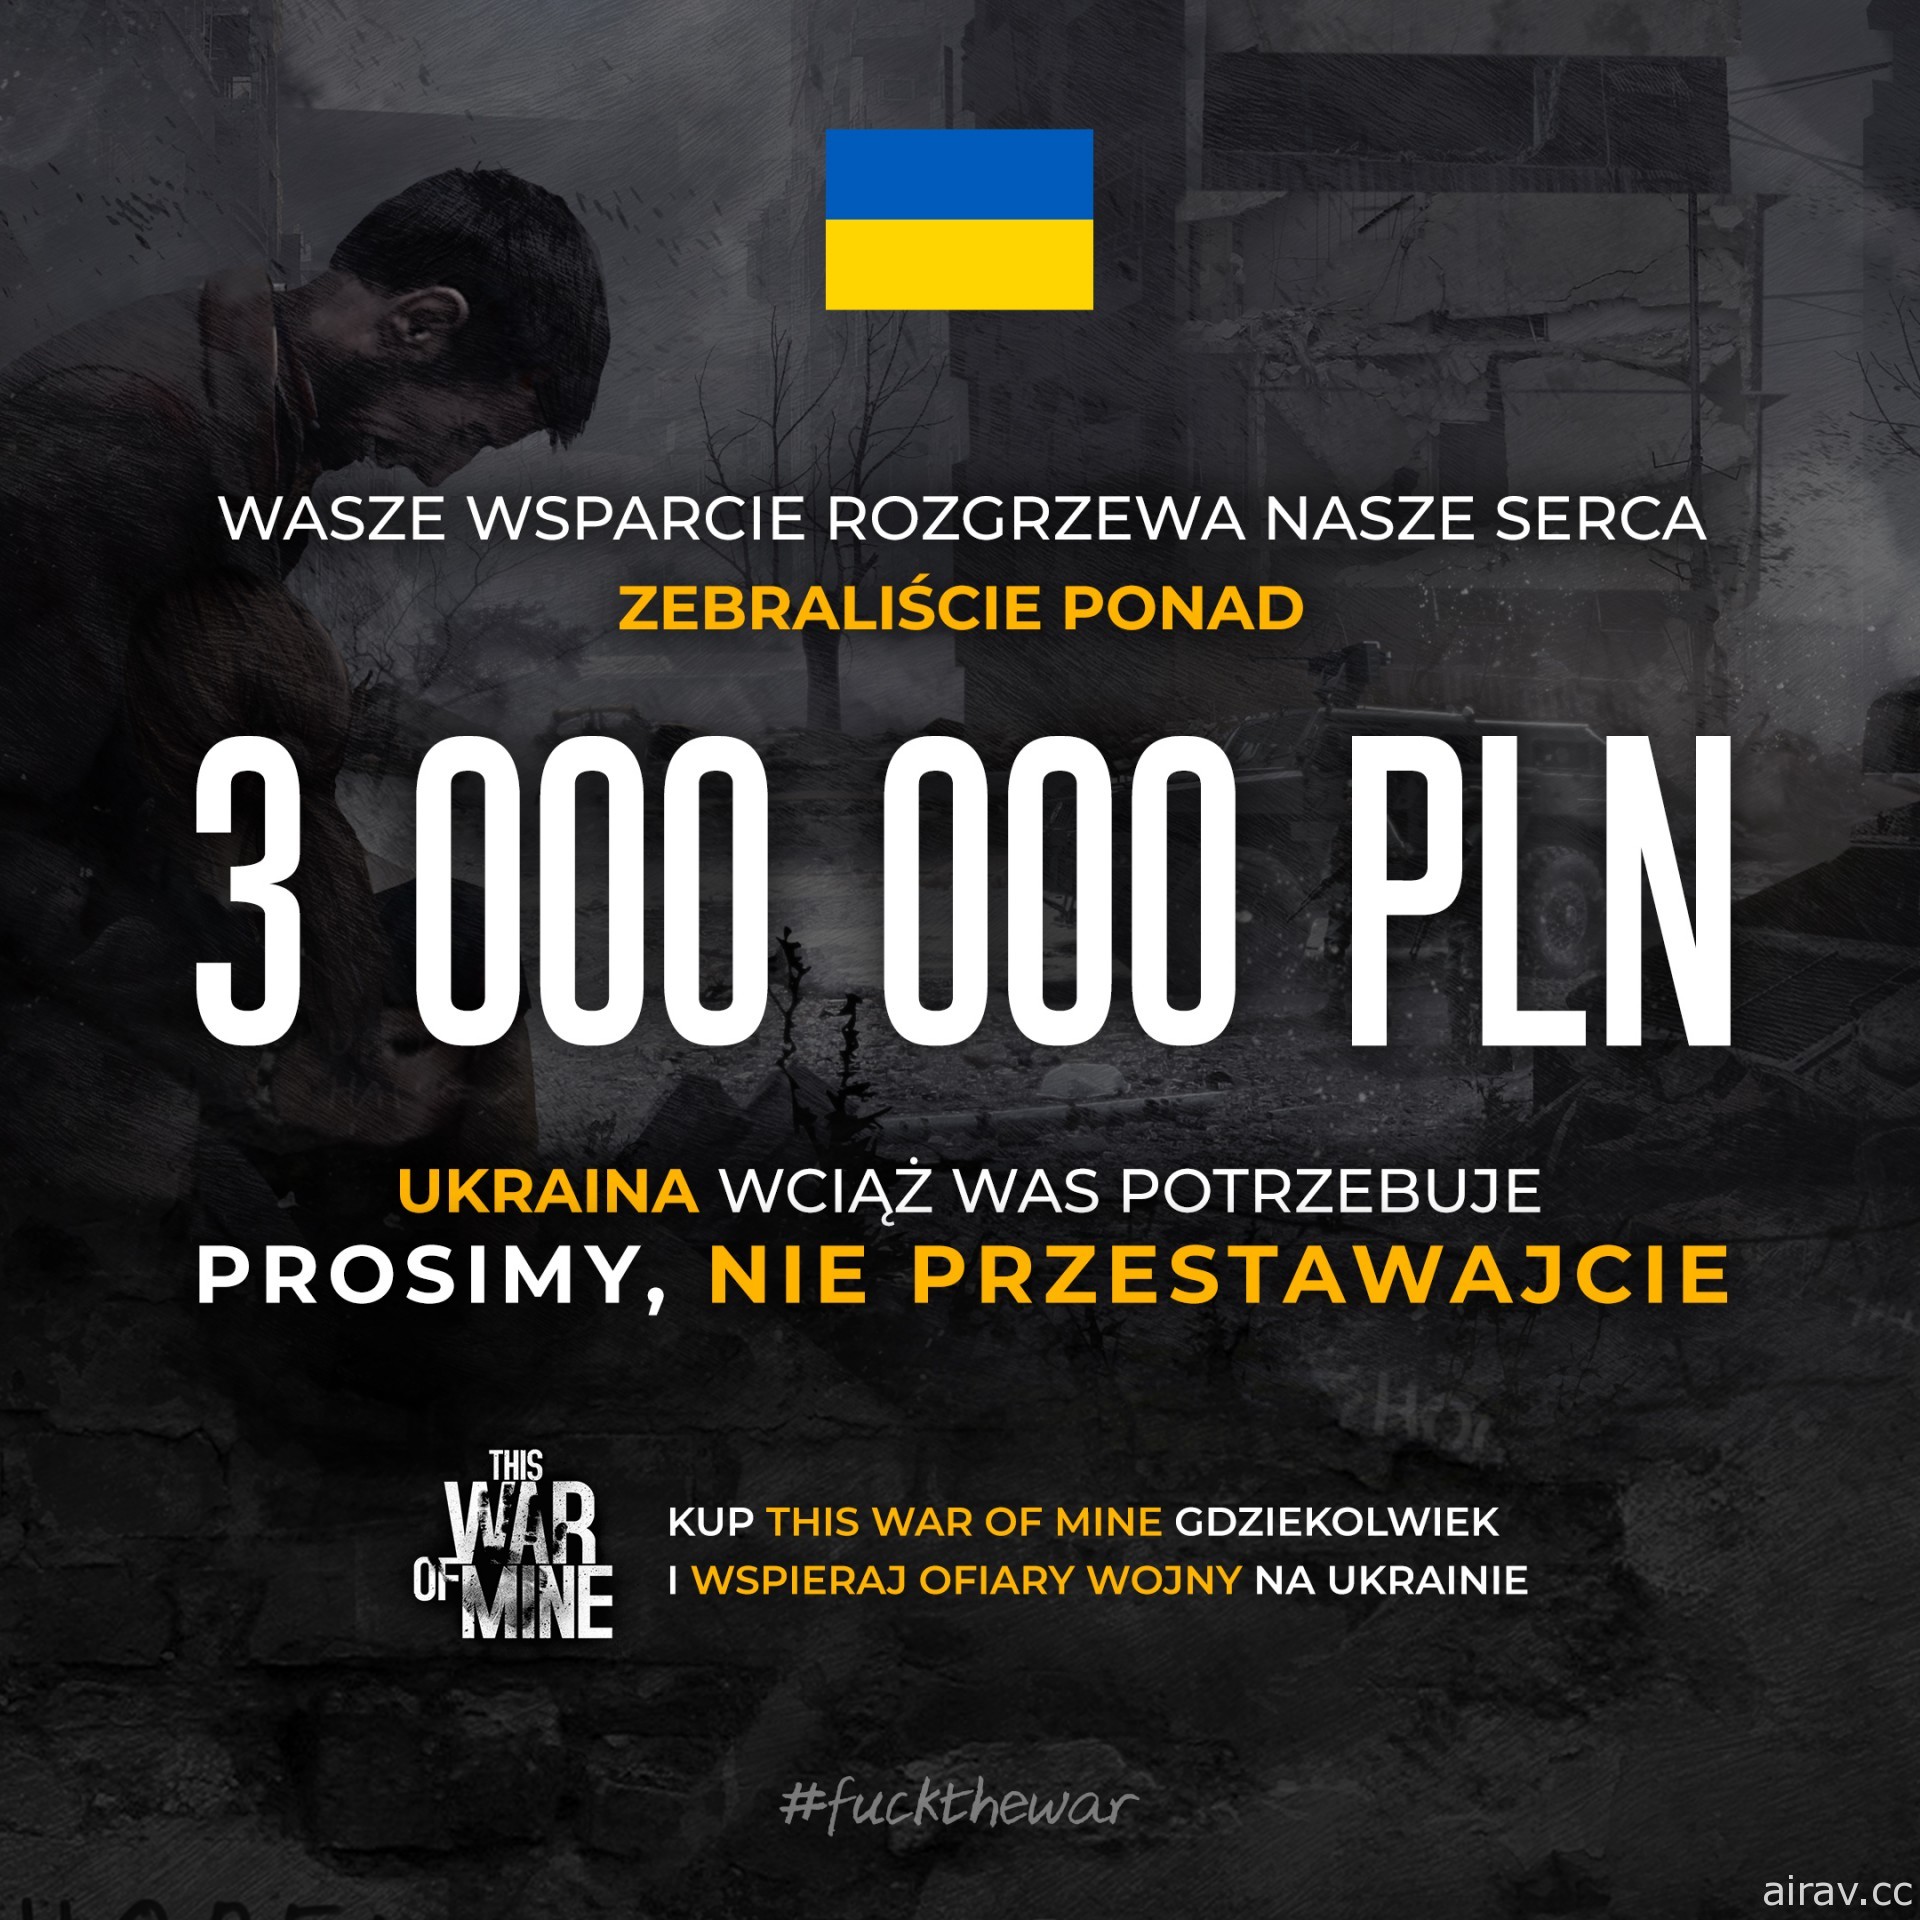 幫助烏克蘭戰火下受害者 《這是我的戰爭》團隊行動獲得響應、公開初步募款成果